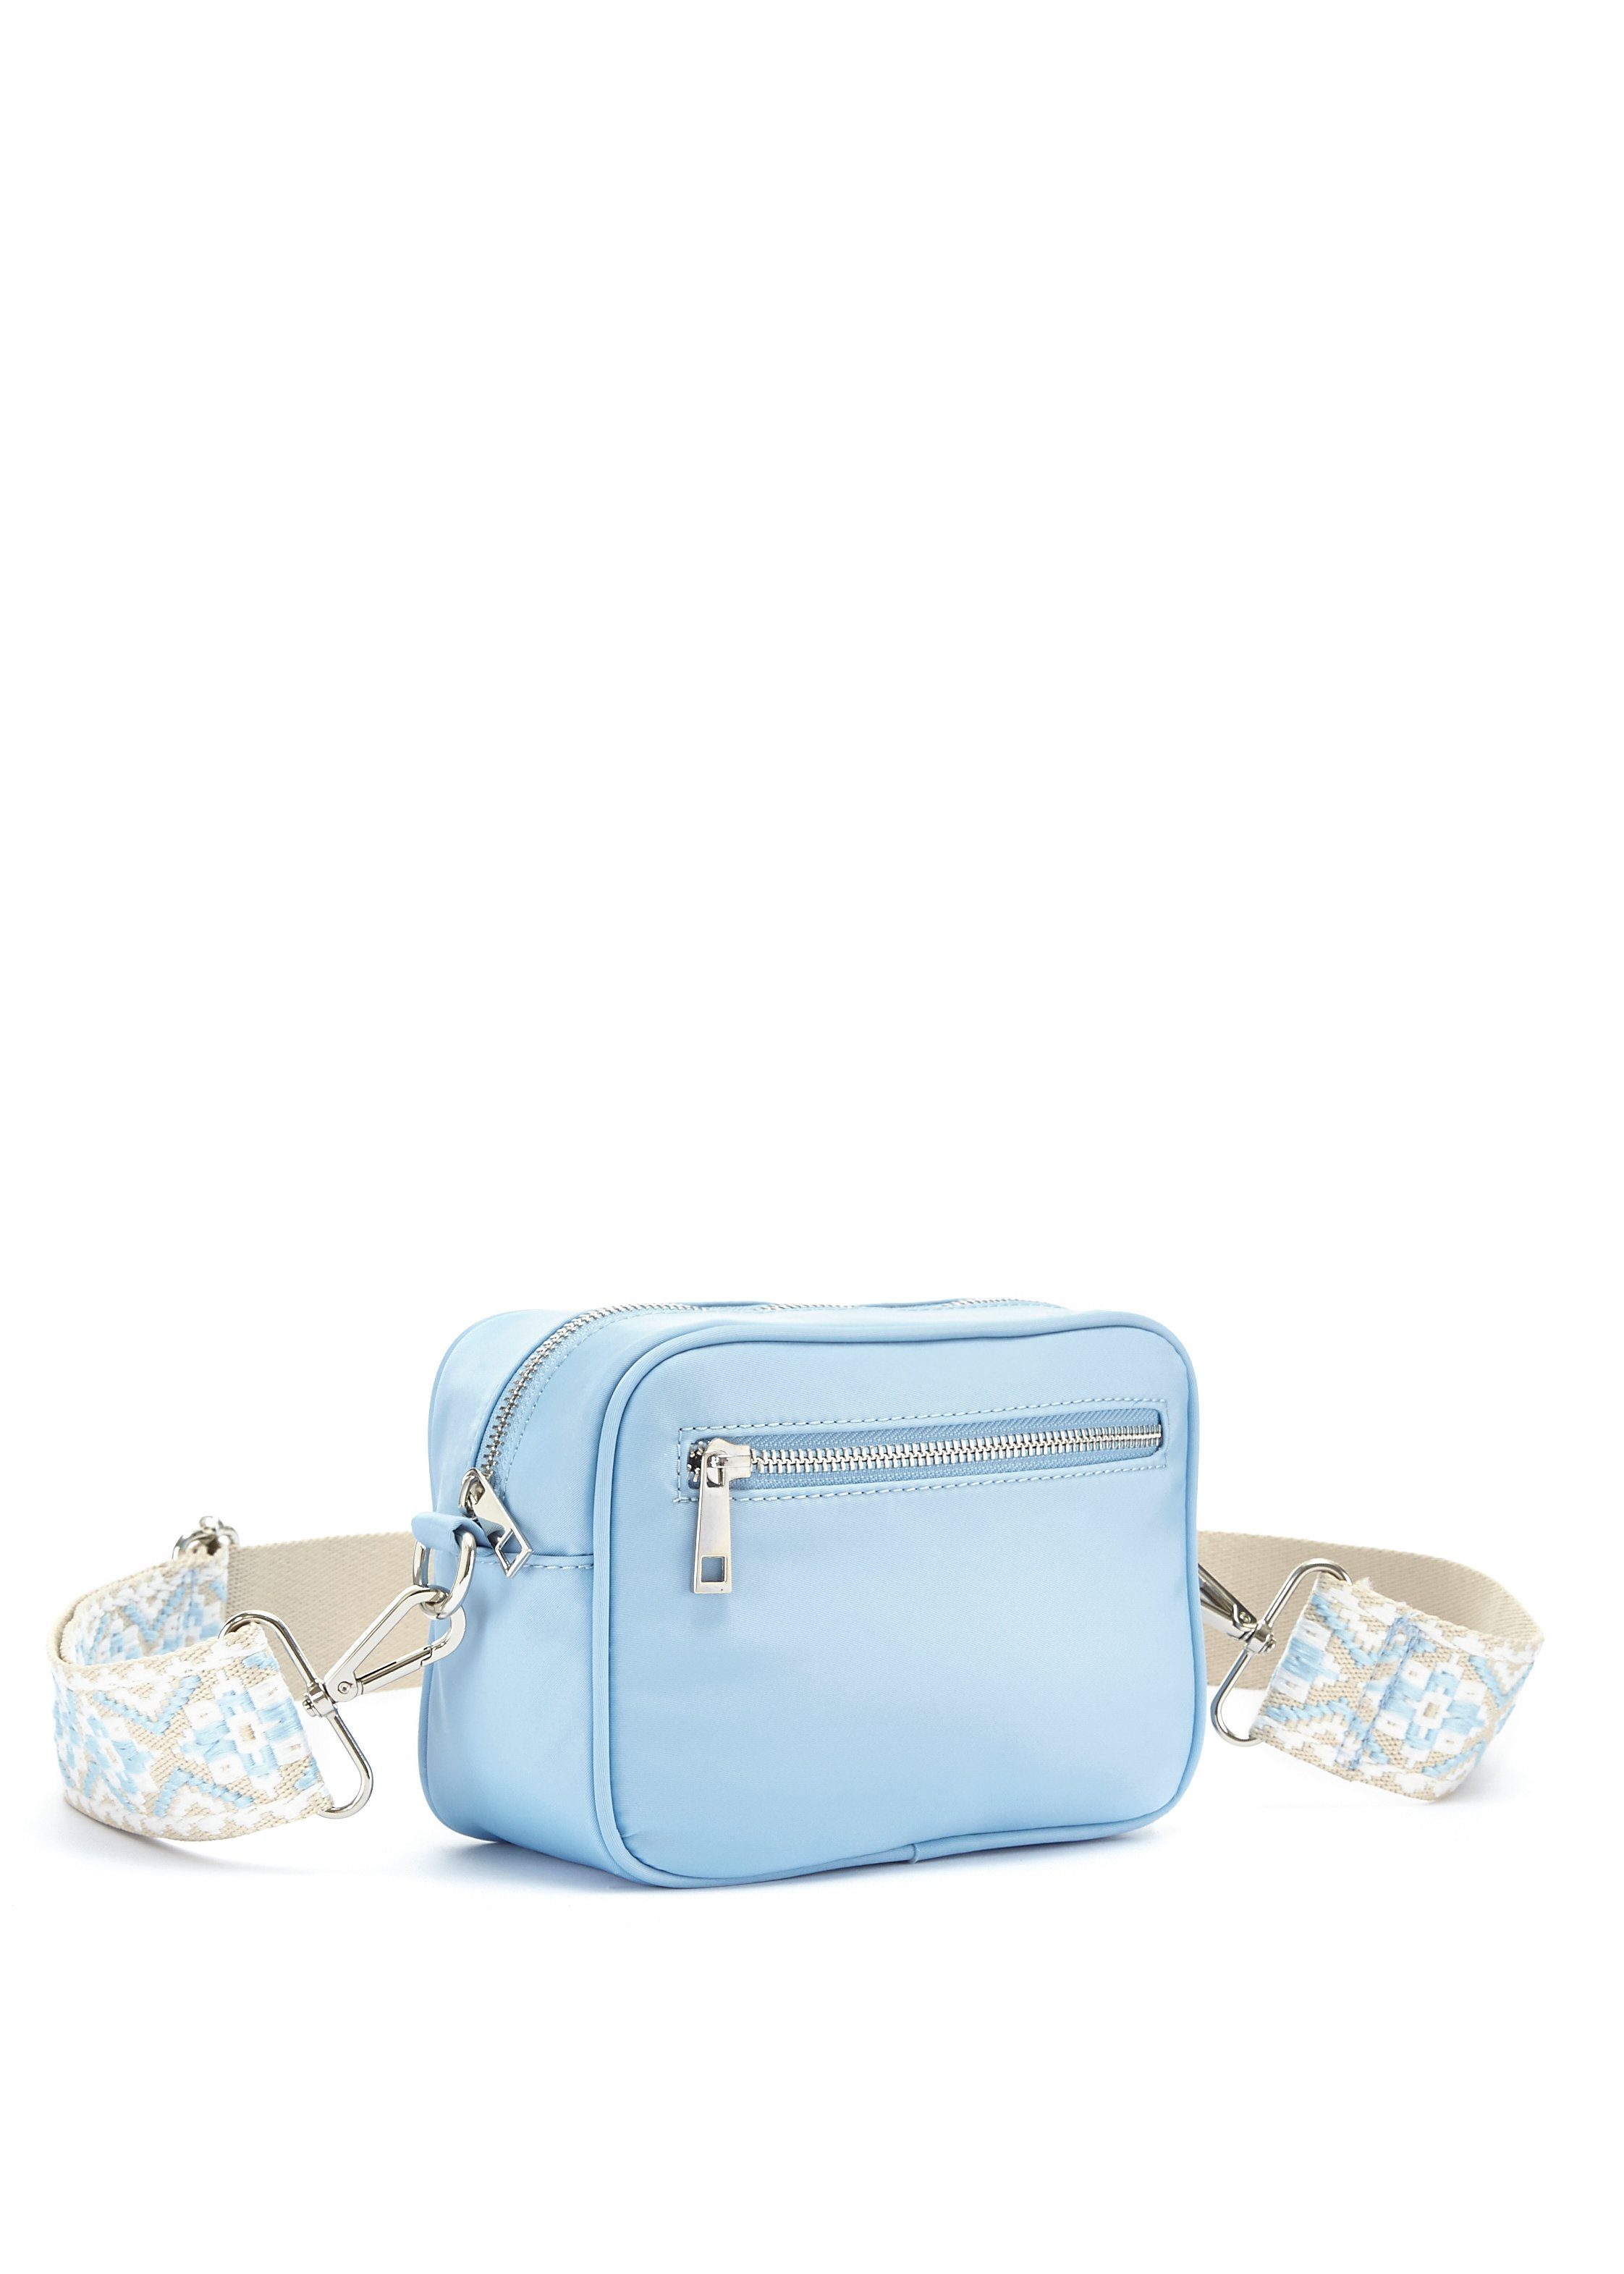 Babyblaue Taschen online kaufen | OTTO